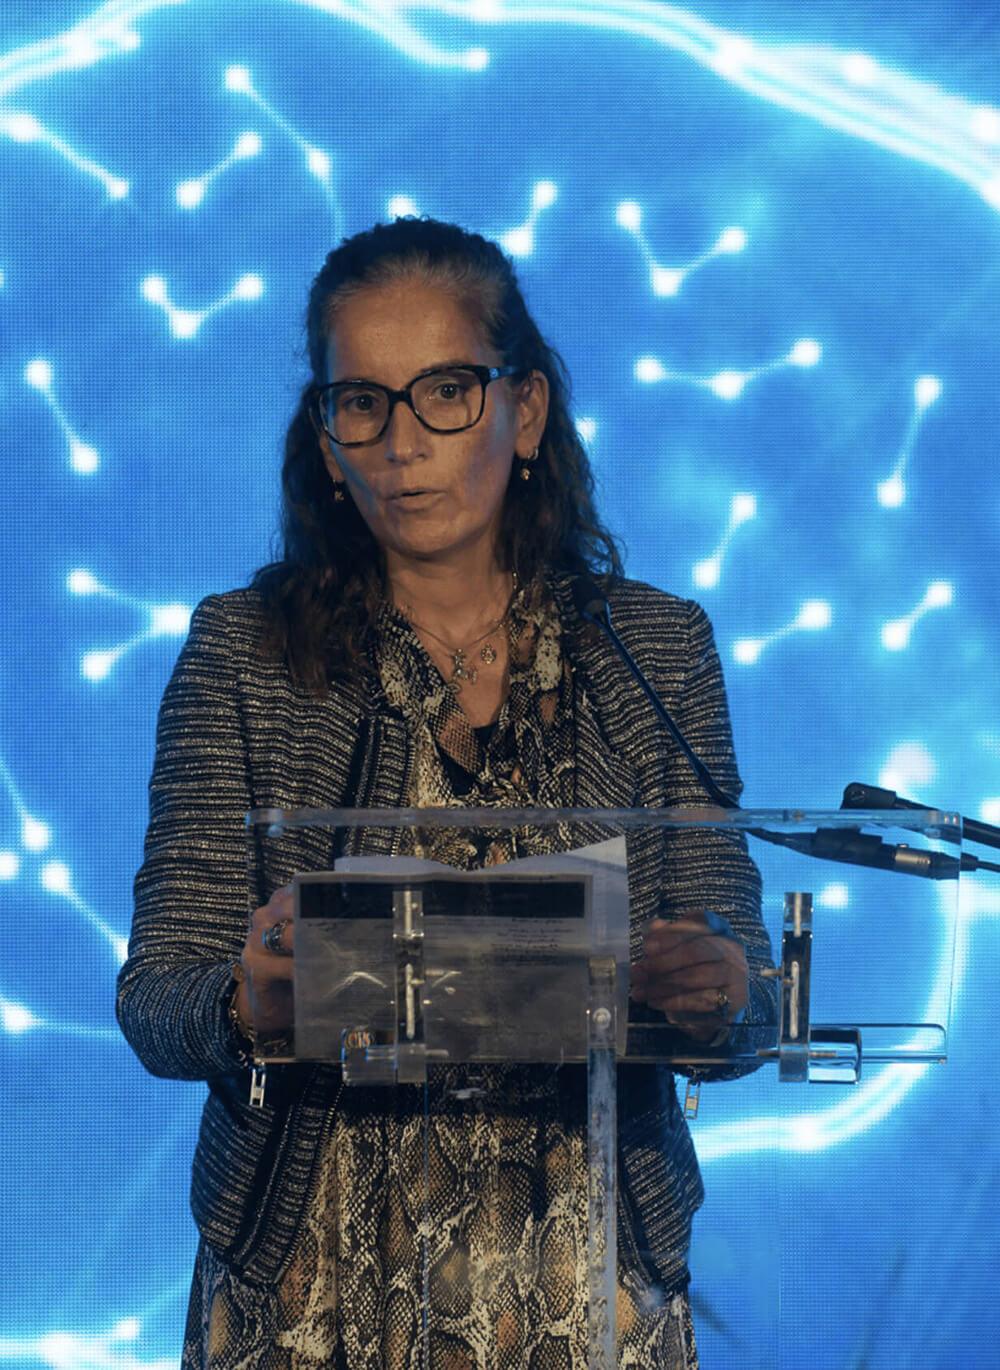 Mónica de Sousa, vencedora do prémio Melo e Castro 2019